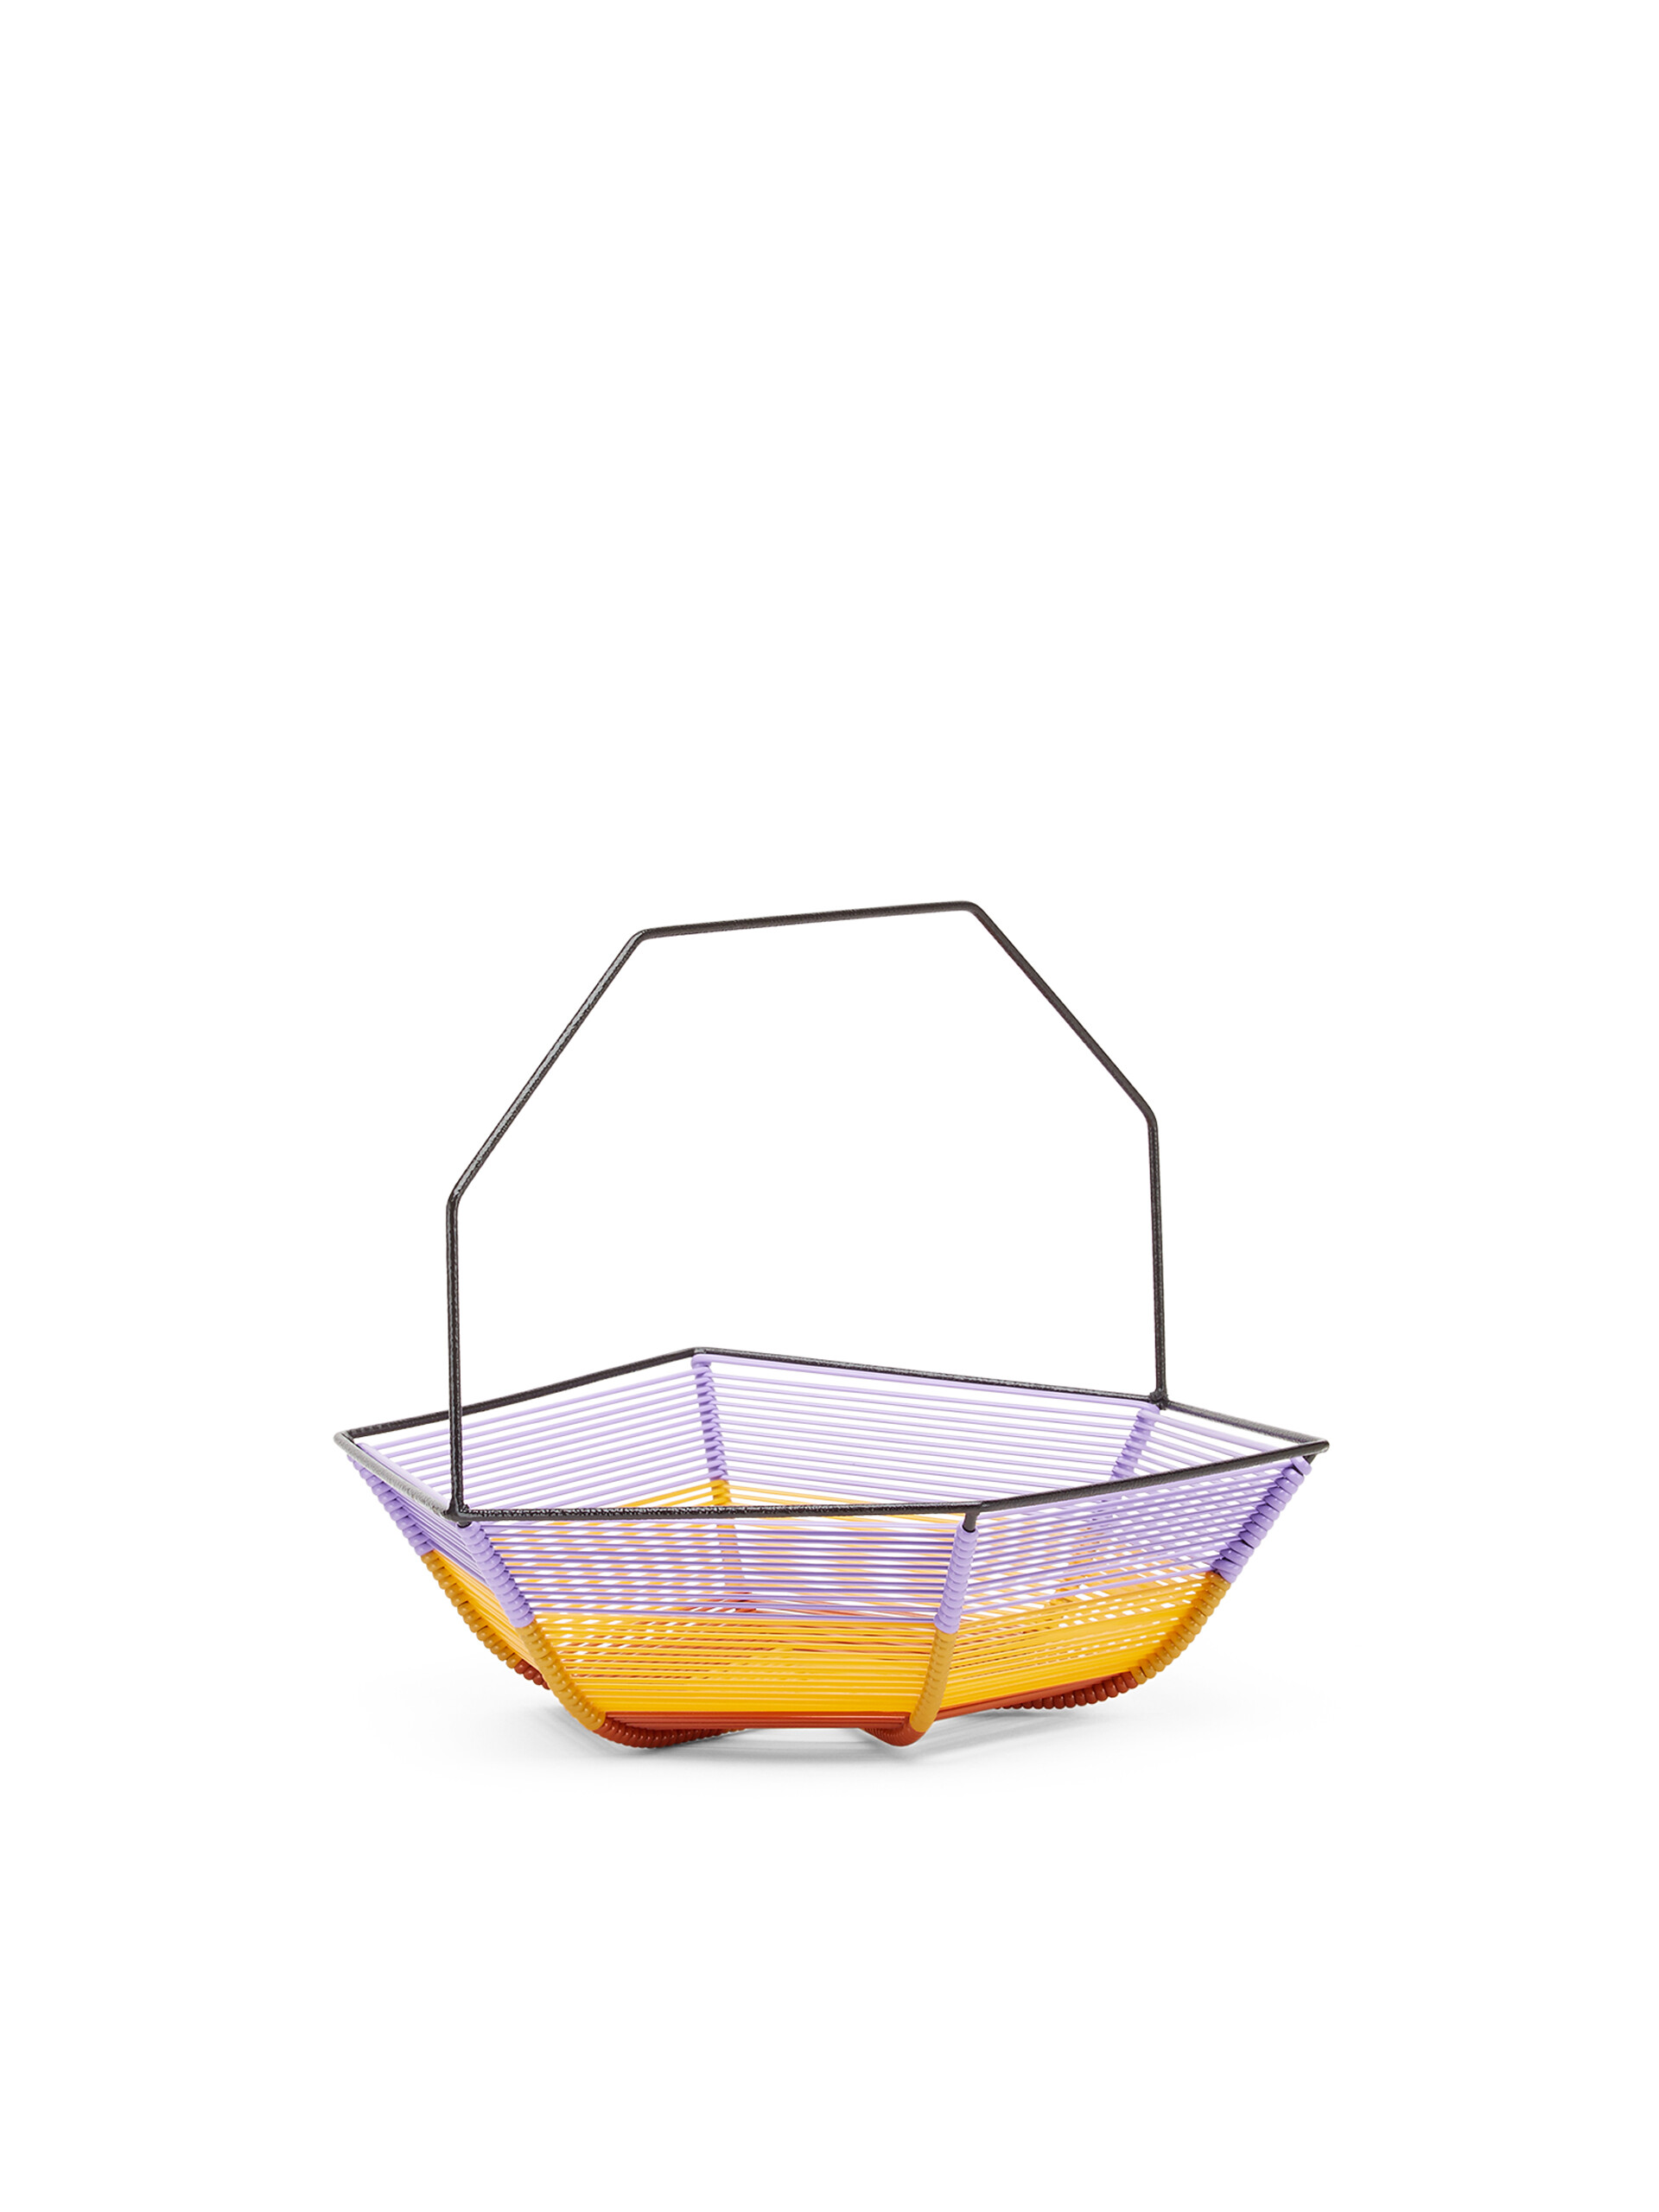 Corbeille à fruits hexagonale MARNI MARKET lilas, jaune et marron - Accessoires - Image 2